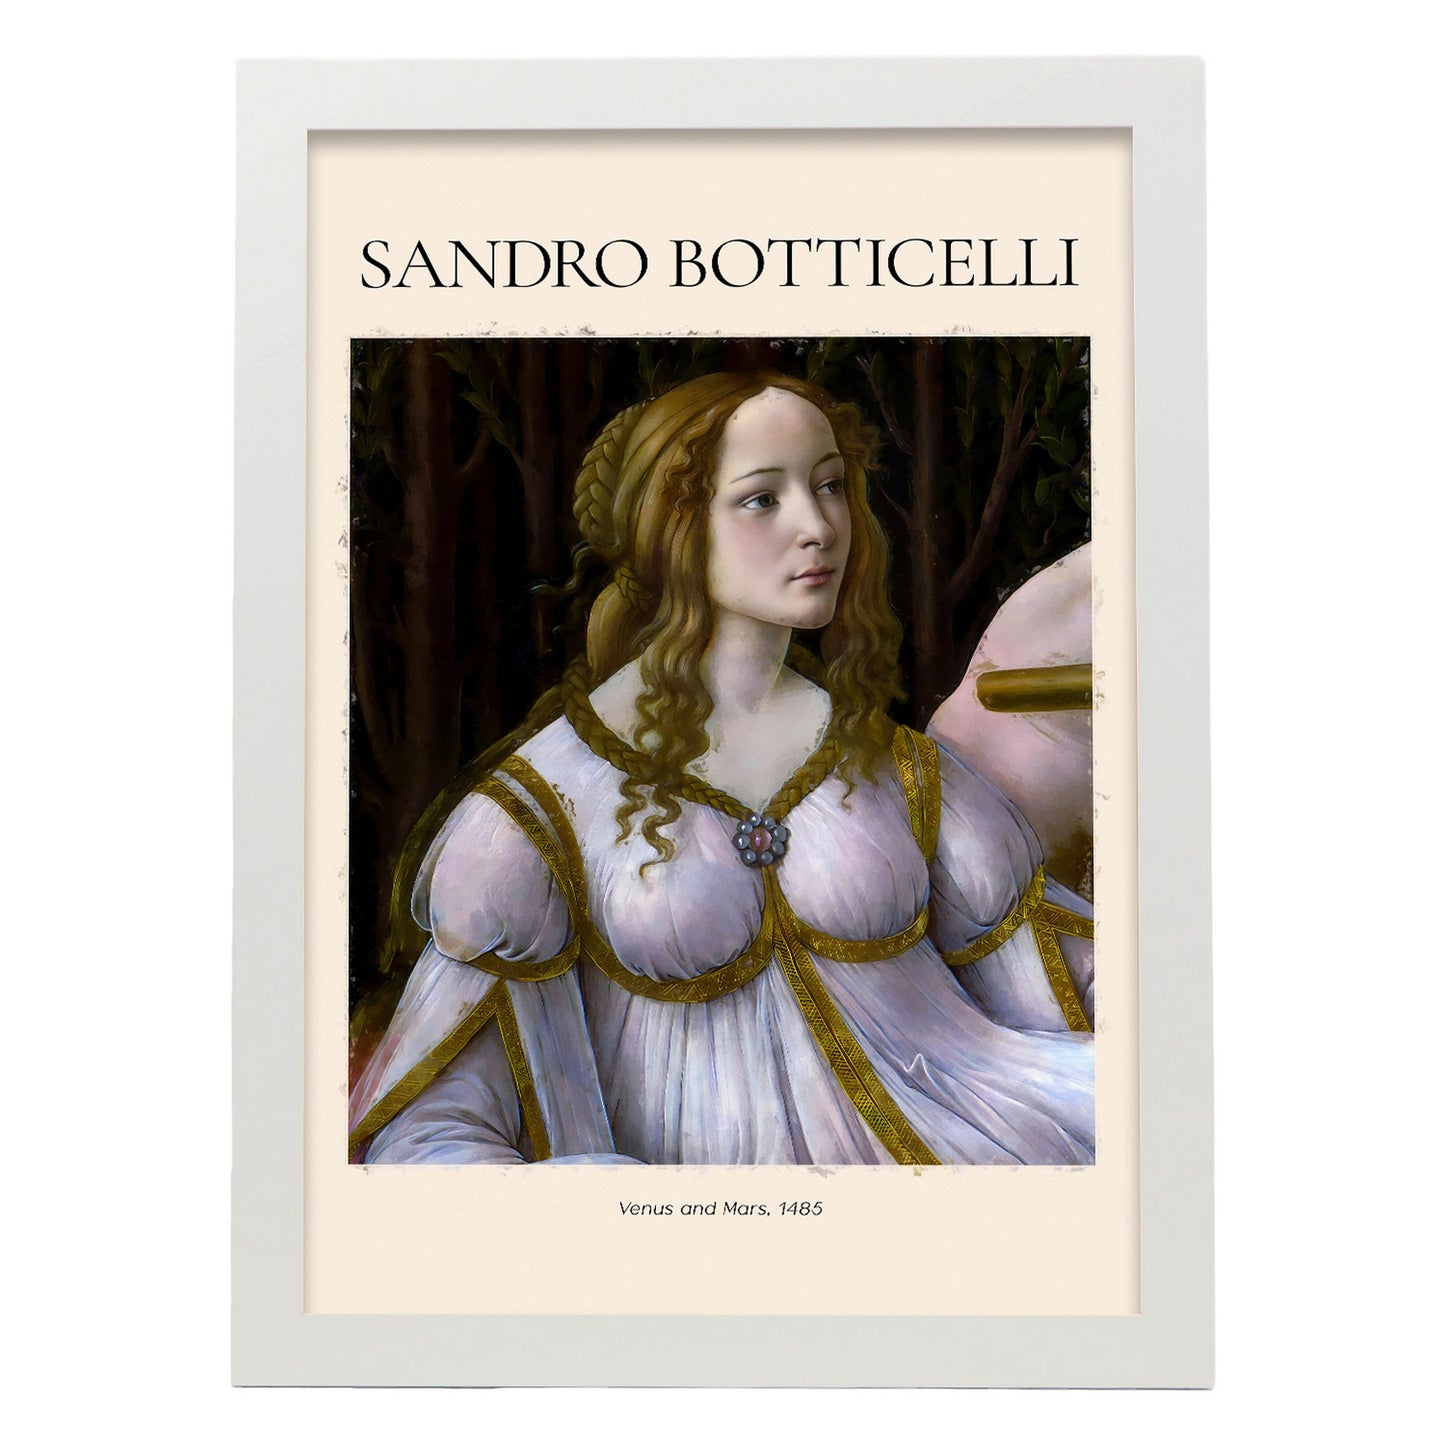 Lámina de Venus y Marte inspirada en Sandro Botticelli